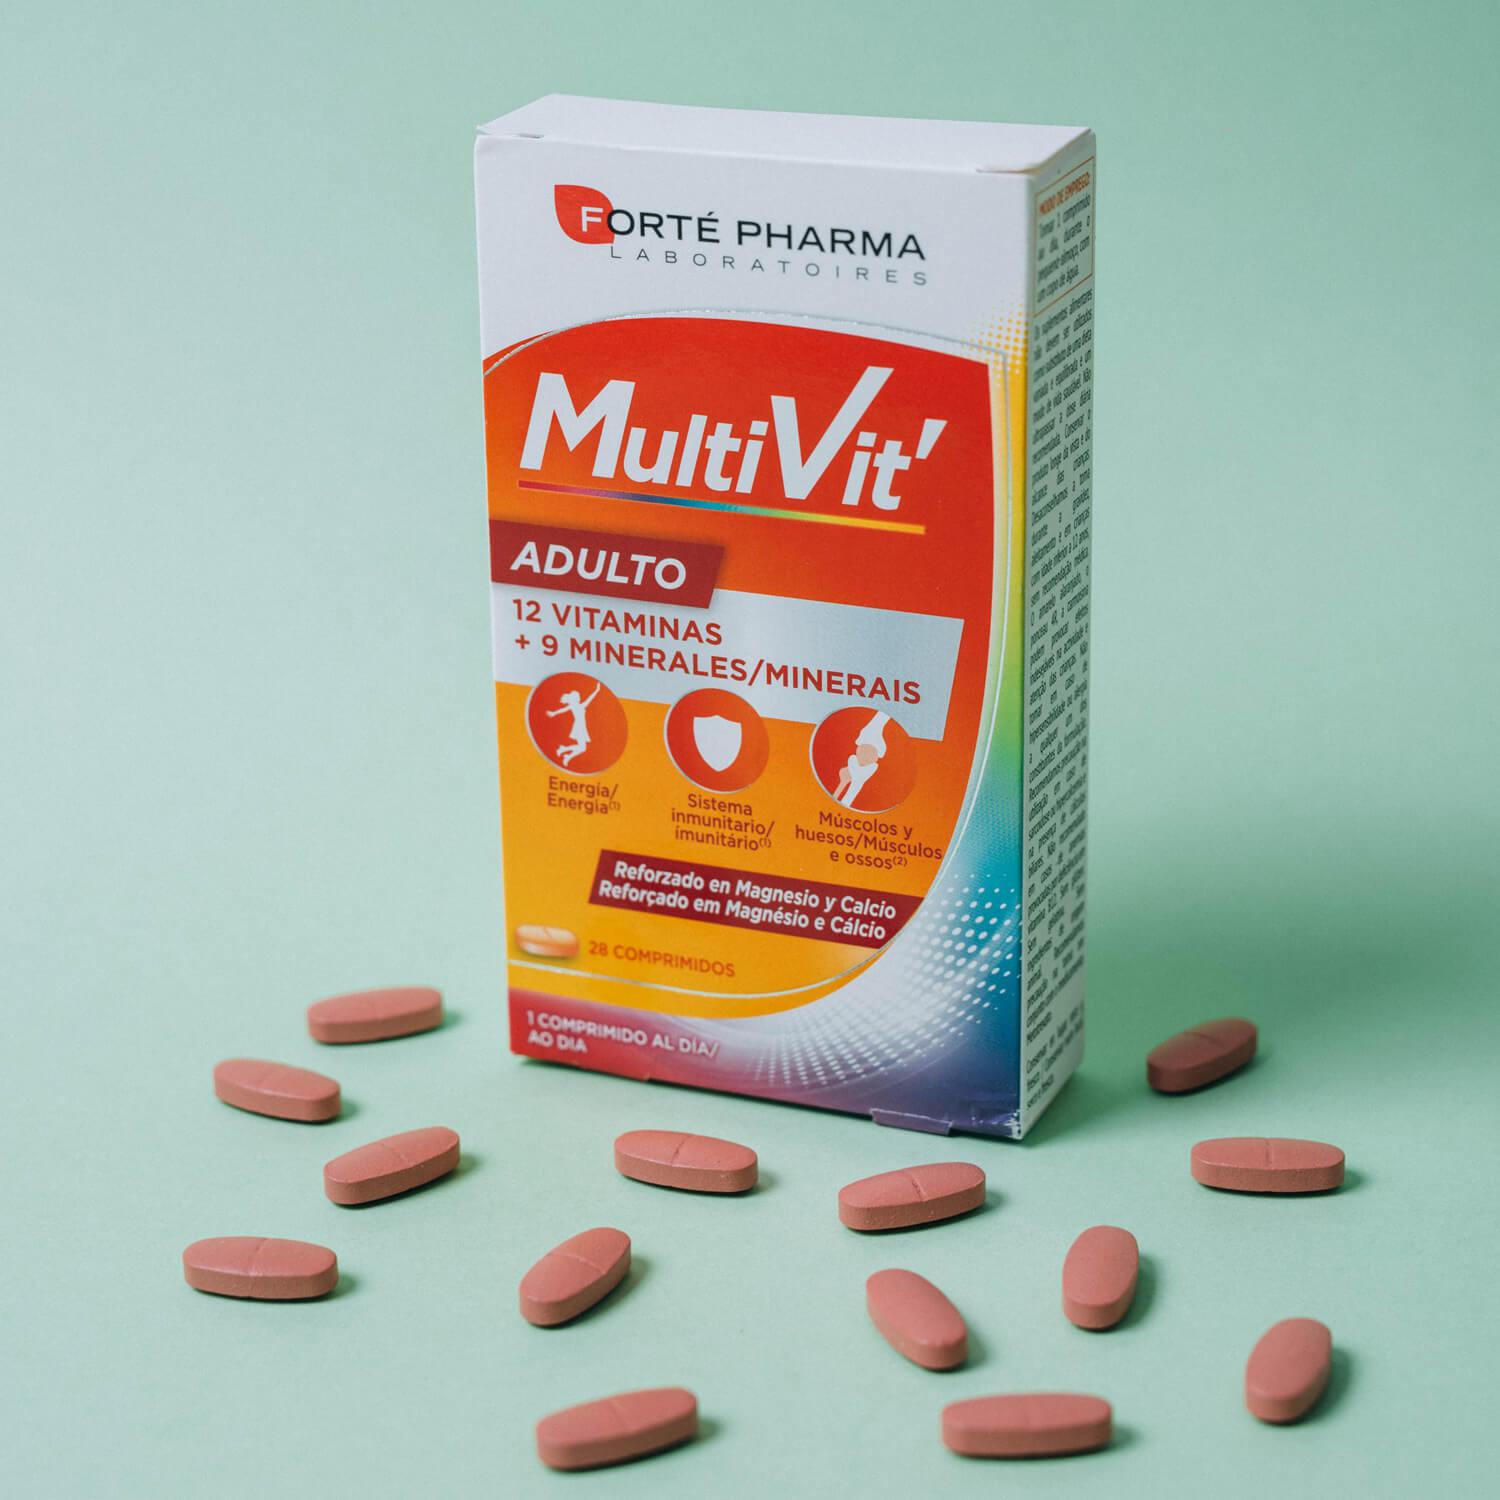 multivit adulto 28 comprimidos-Vitalidad y Energía-Naturalidad-Forté Pharma